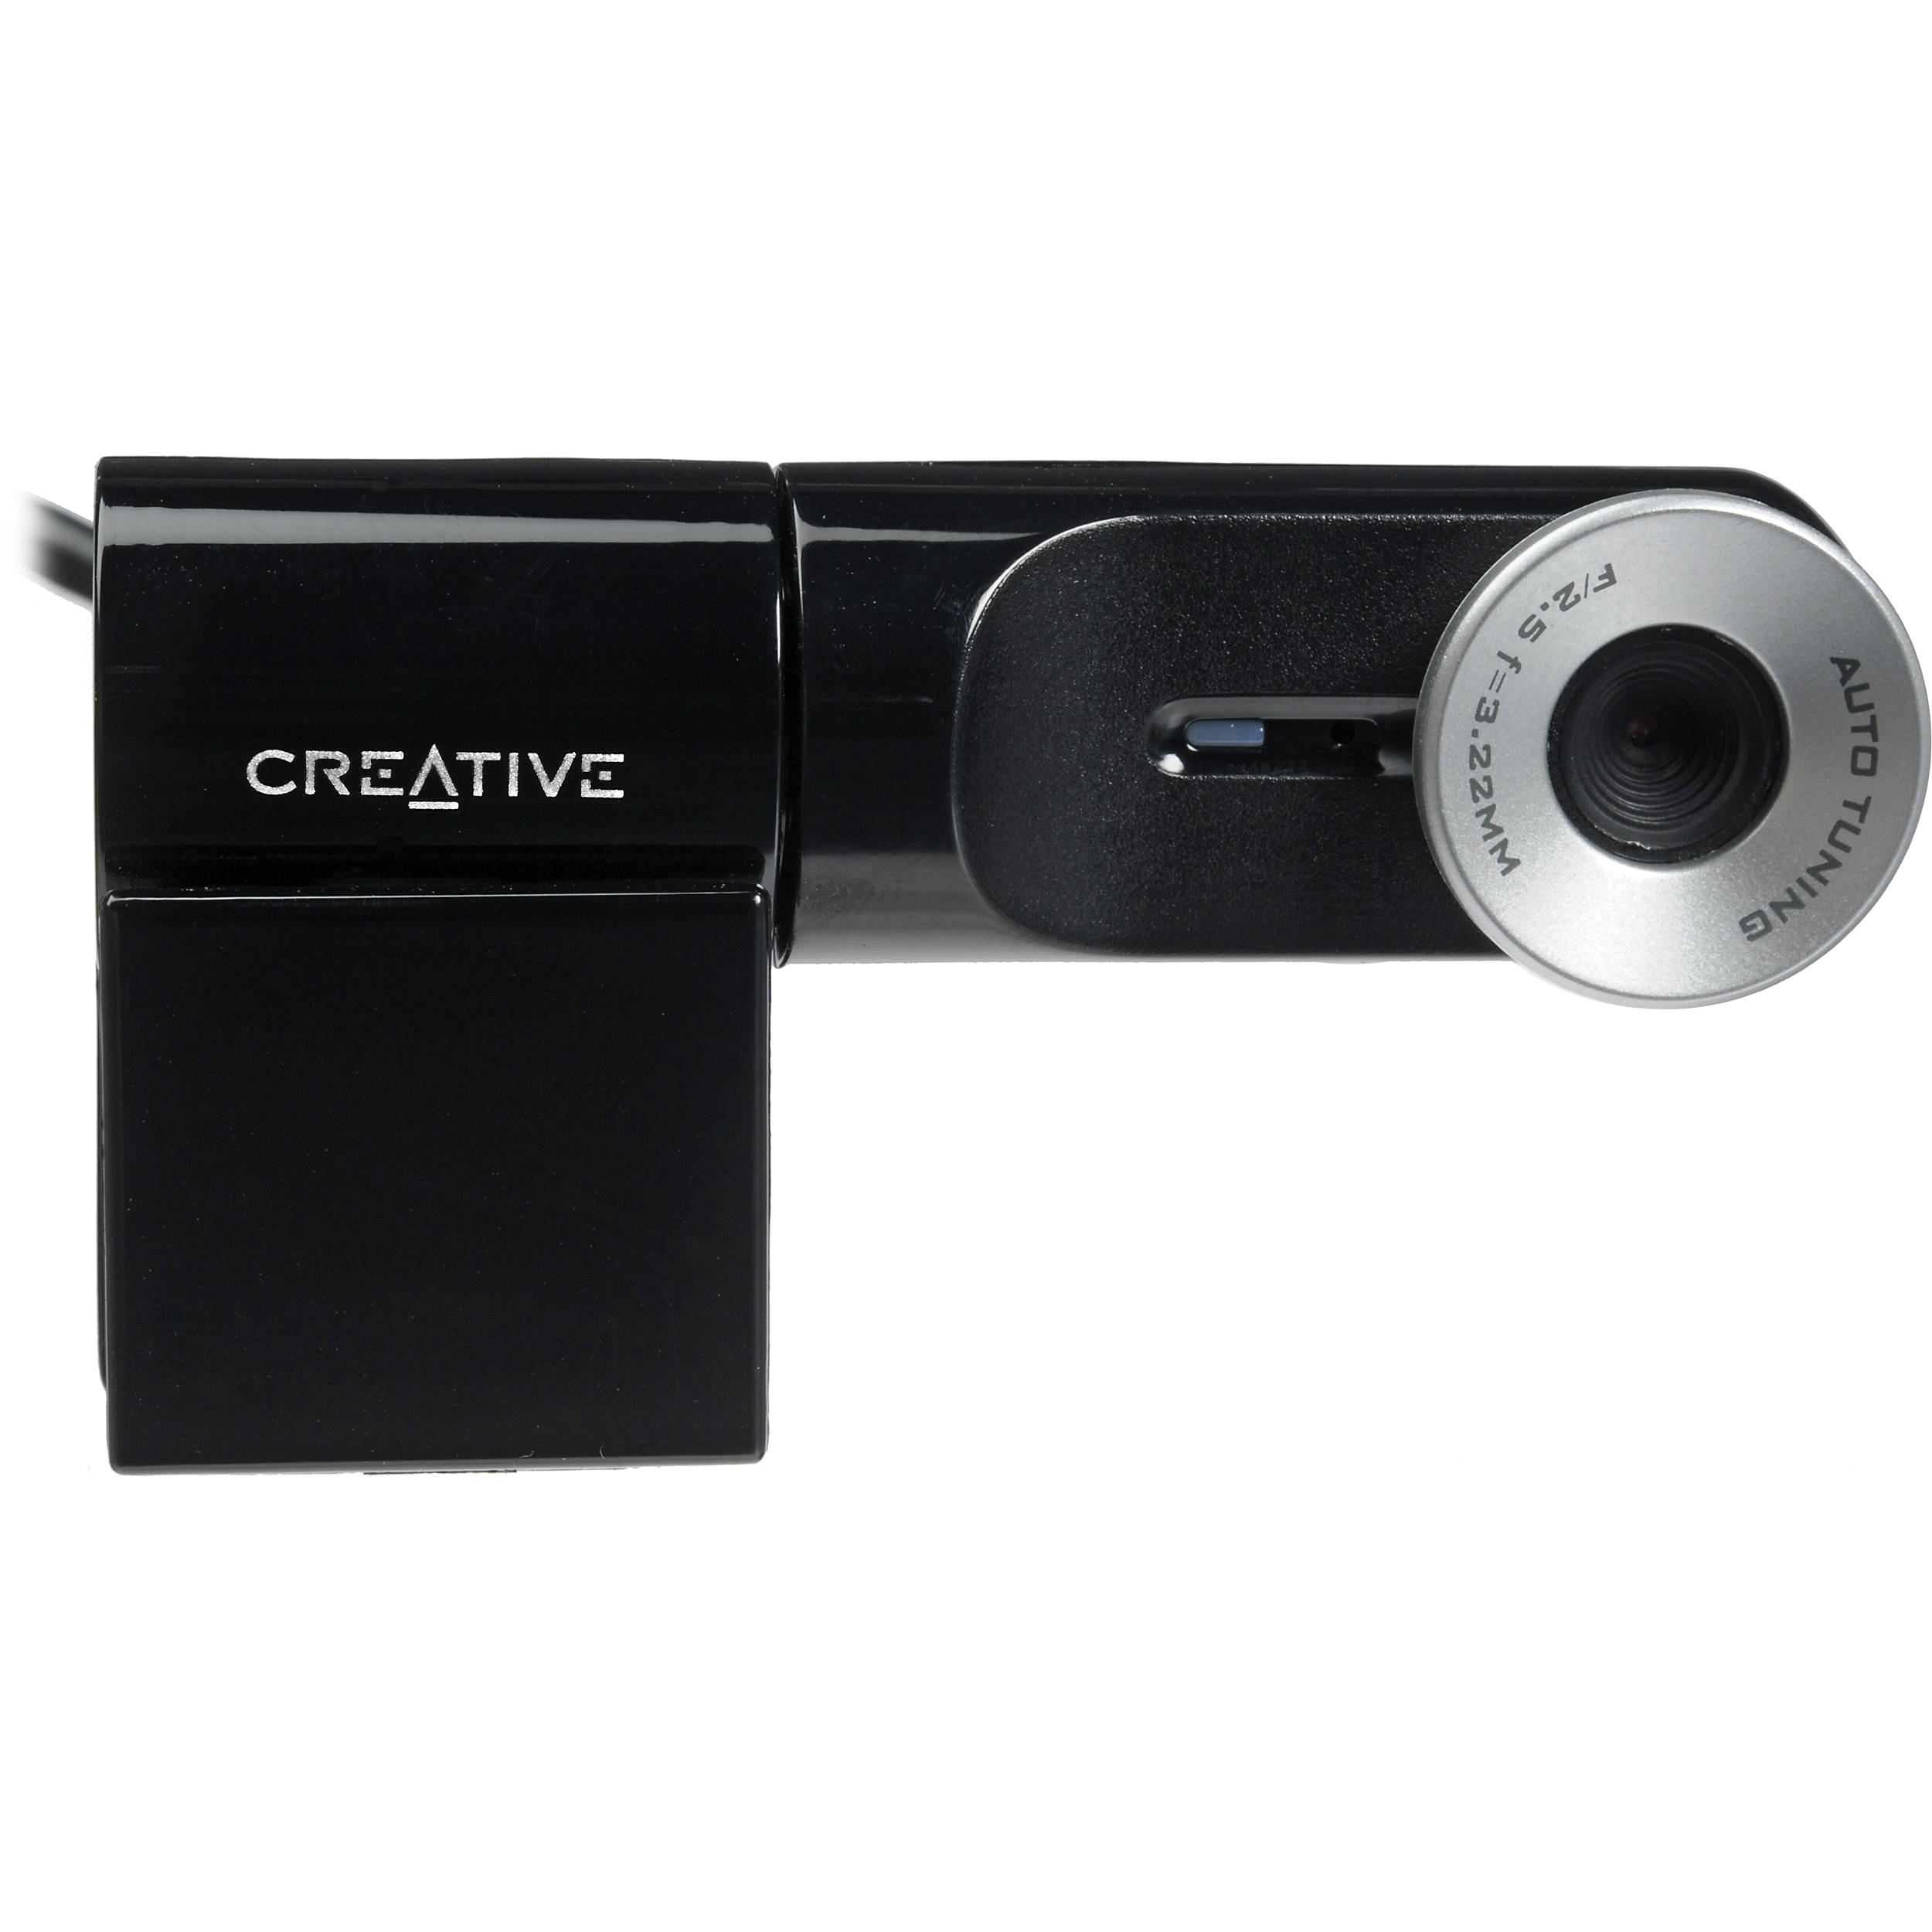 creative web camera vf 0050 driver download